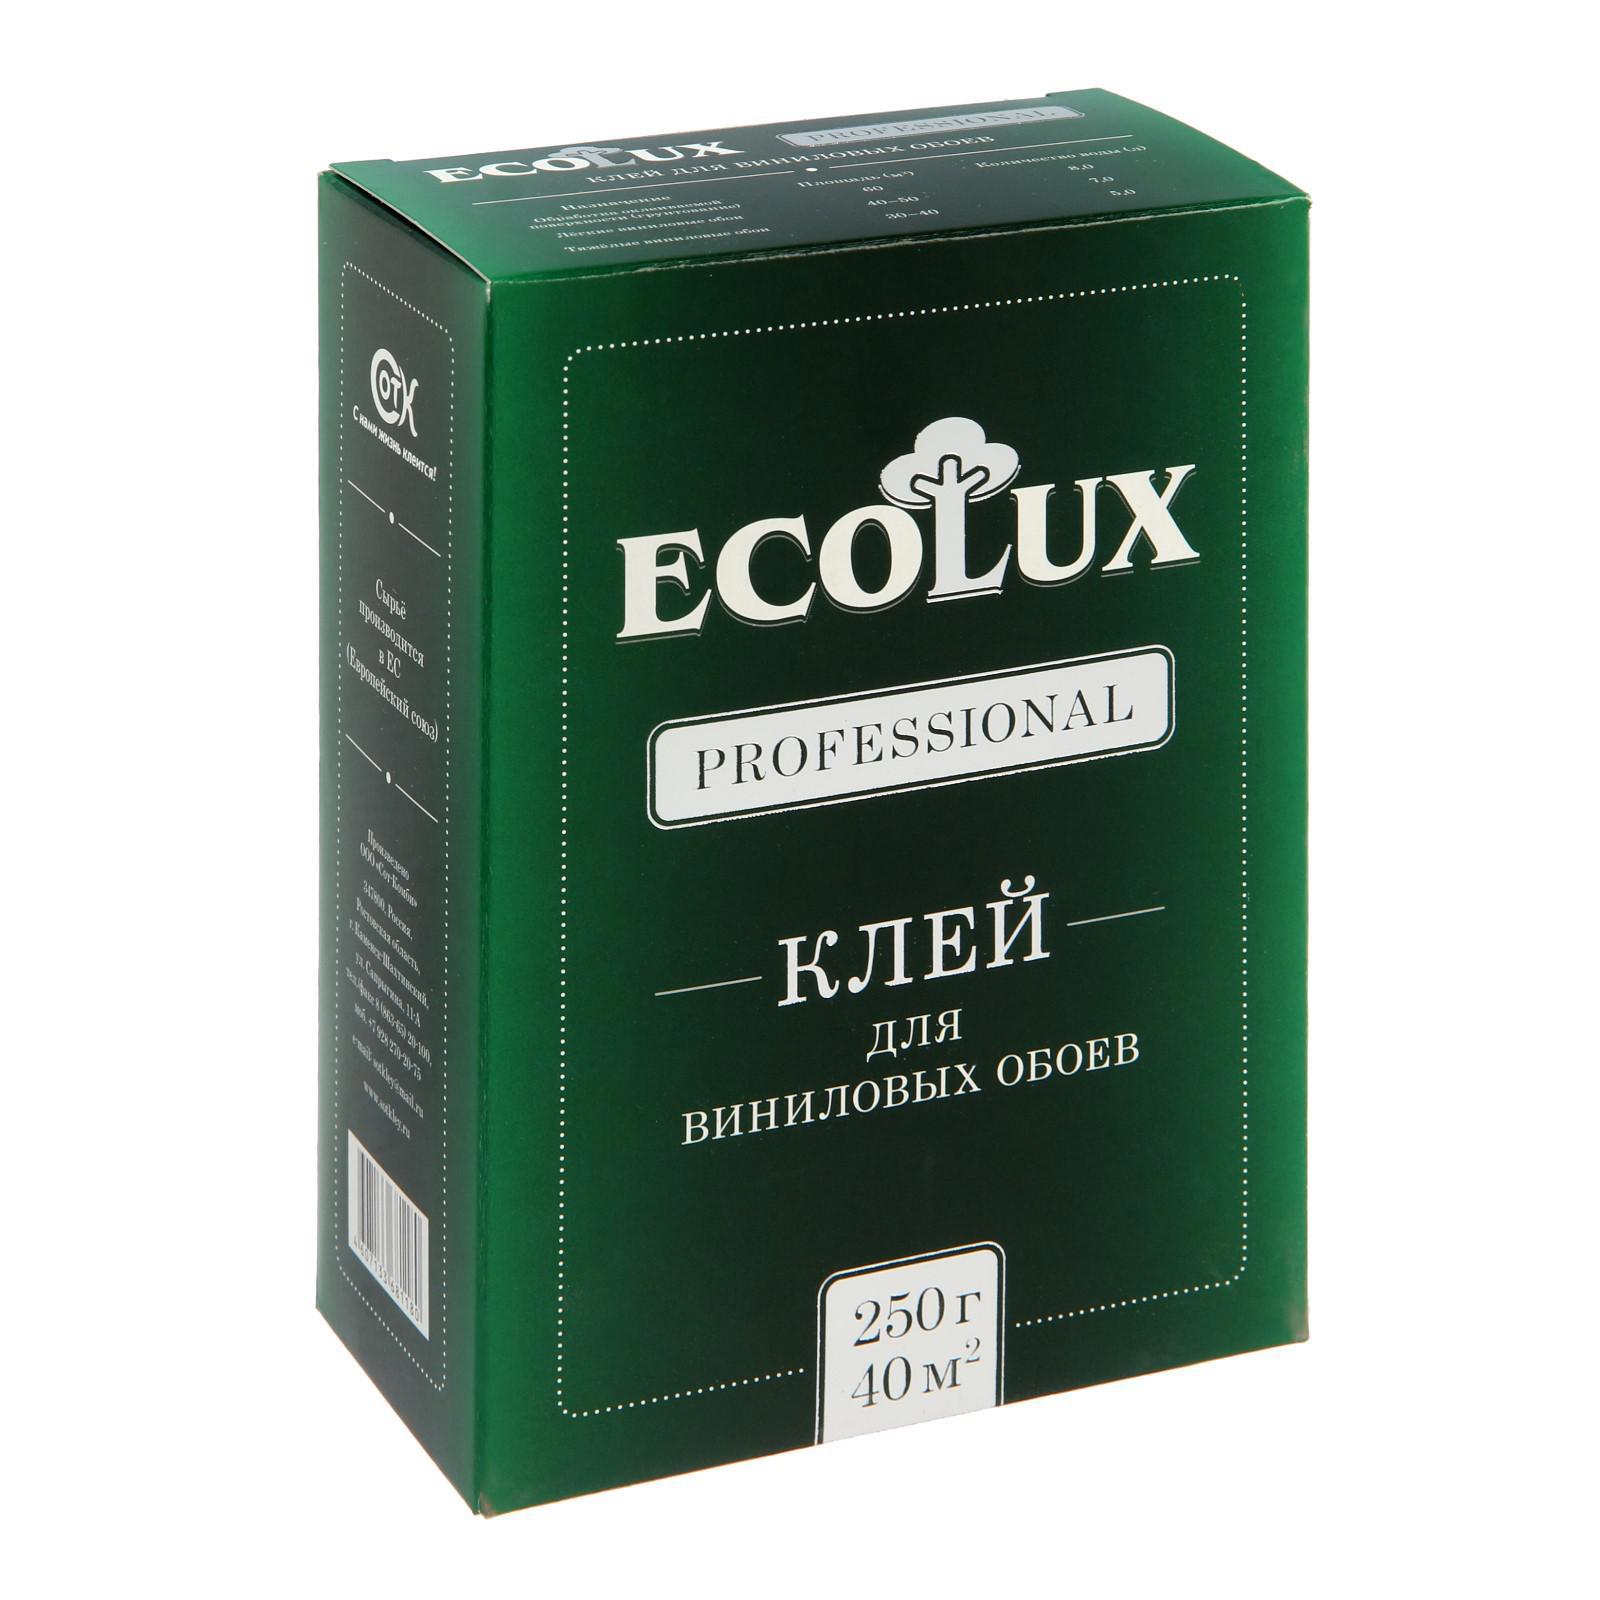  обойный ECOLUX Professional виниловый 250 г, 10 м2  .